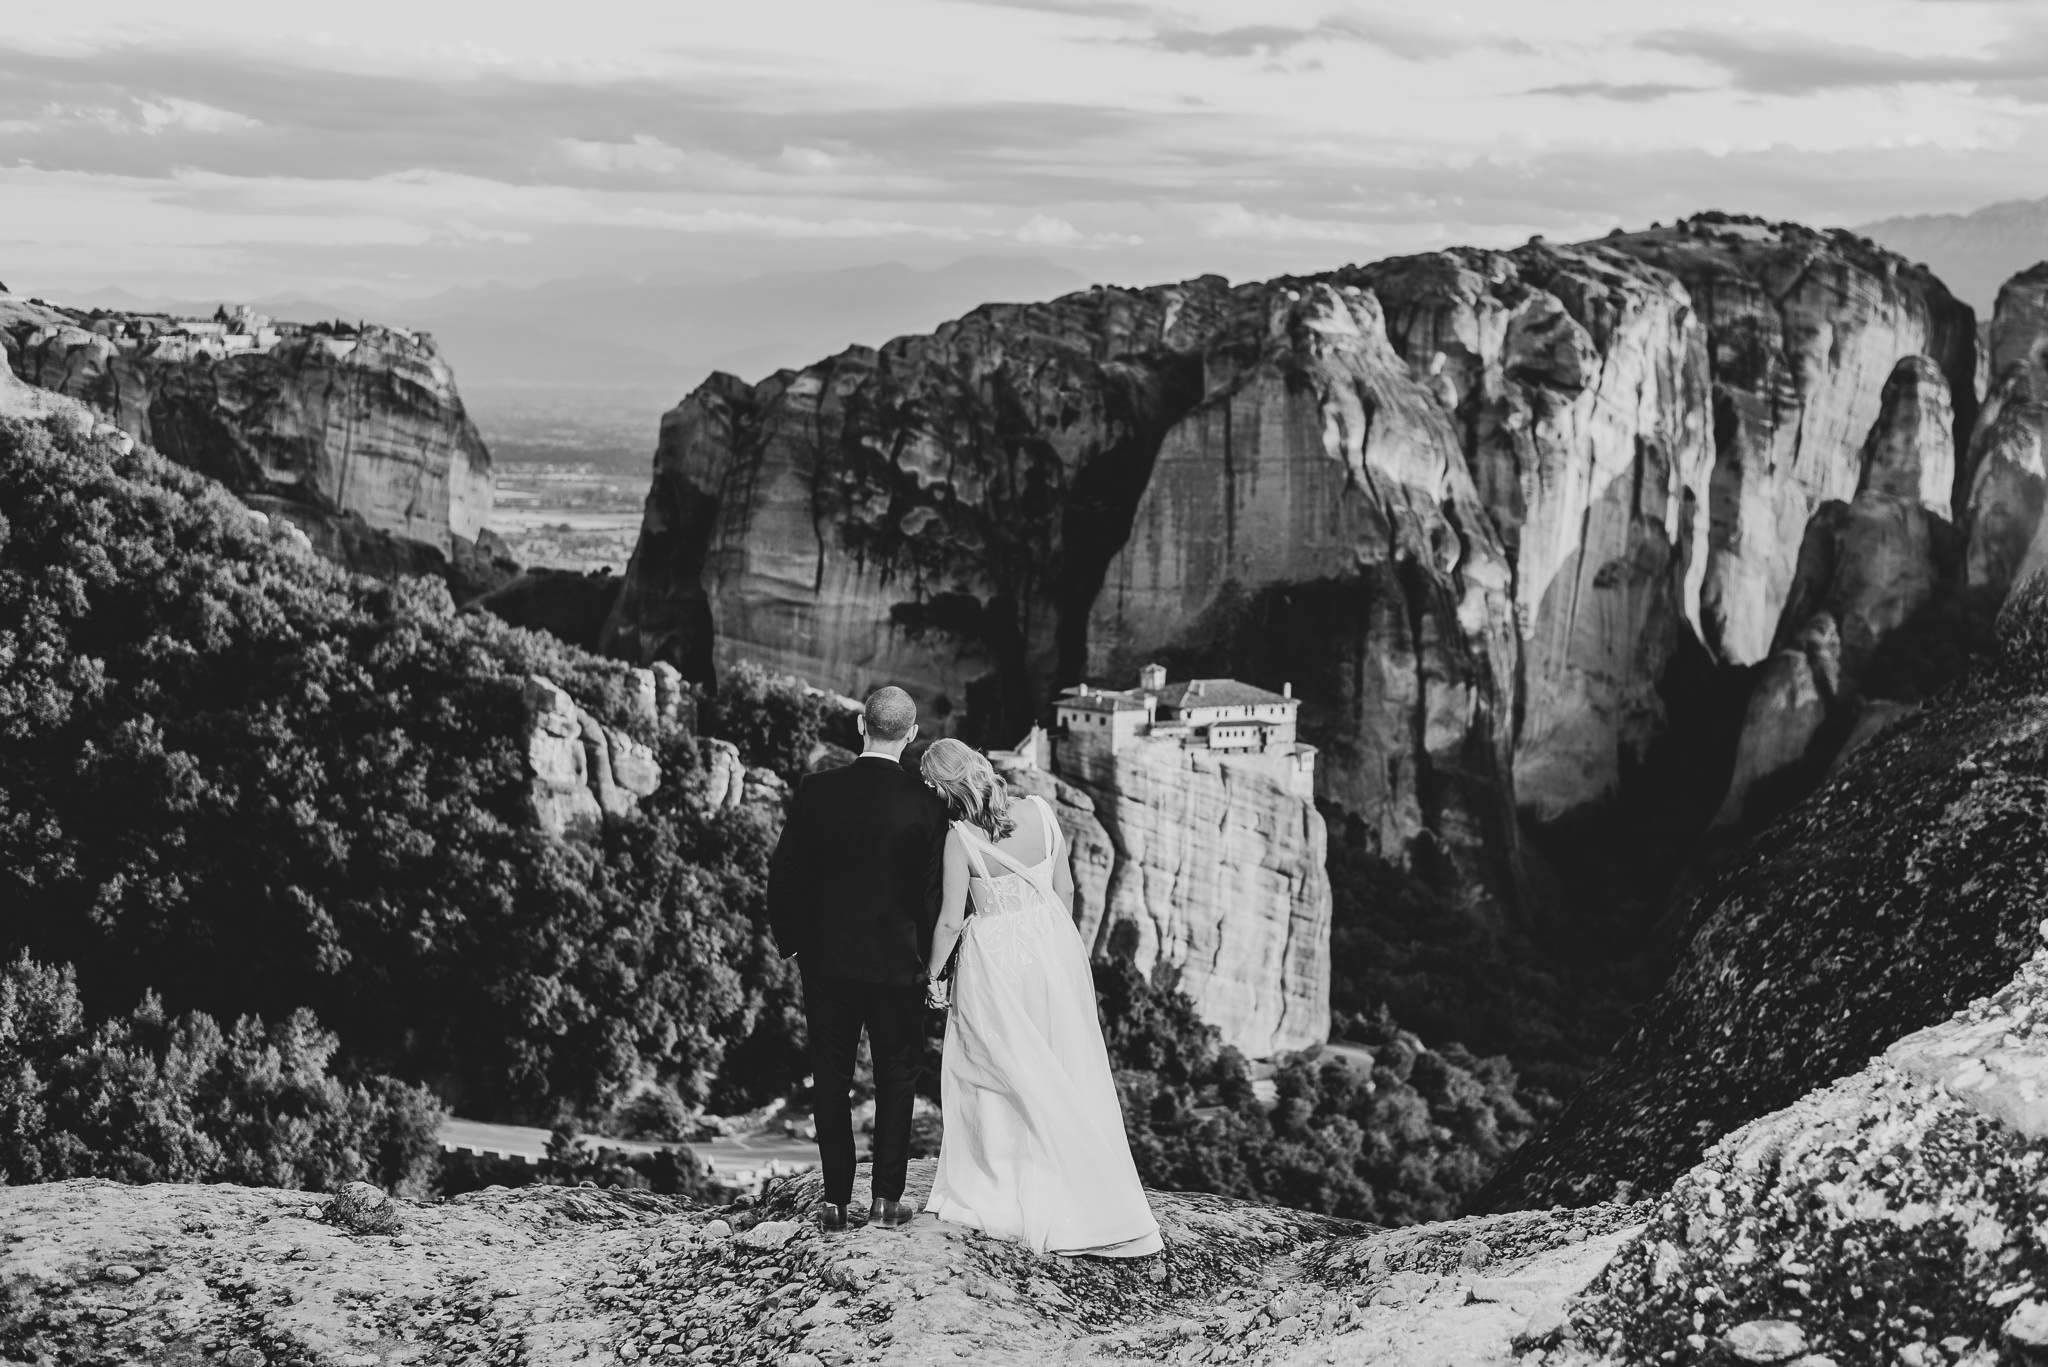 φωτογράφιση γάμου στα μετέωρα-wedding photographer greece-charis avramidis